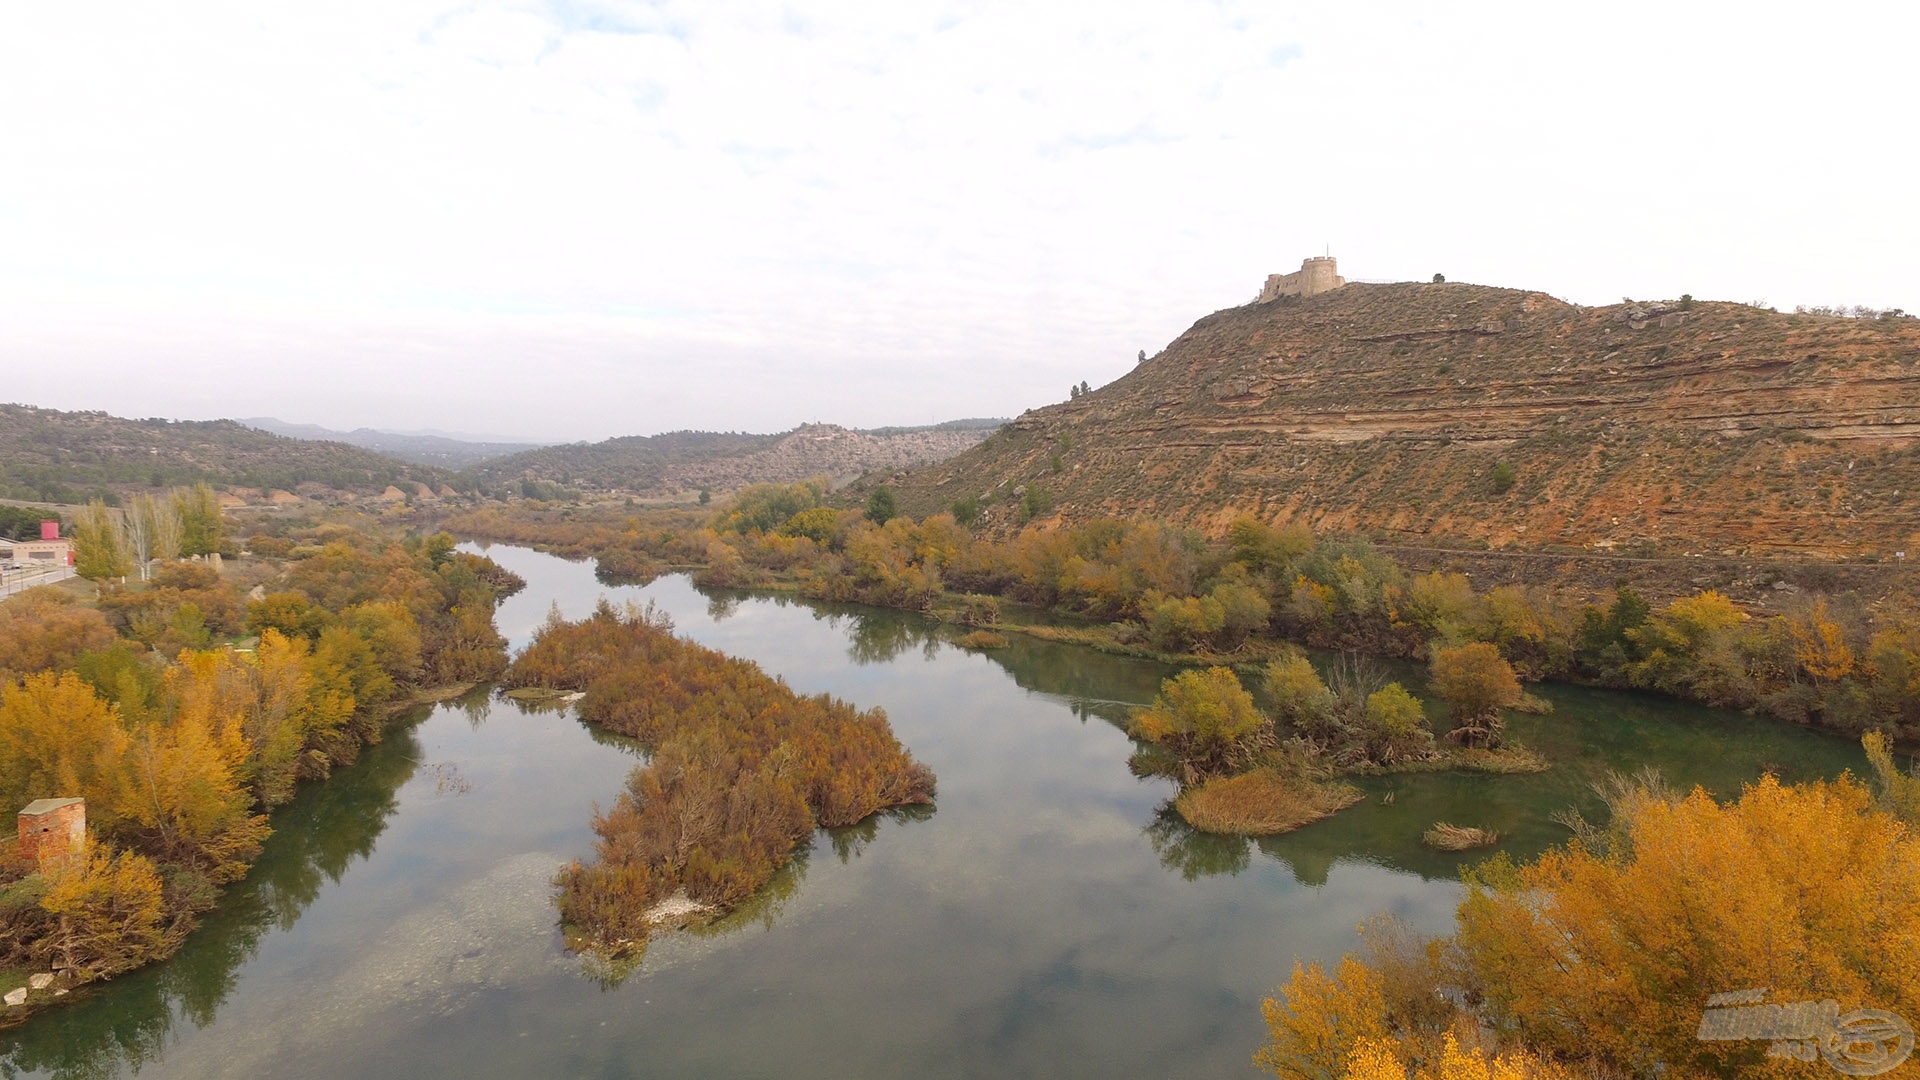 Itt csordogál békésen az Ebro folyó